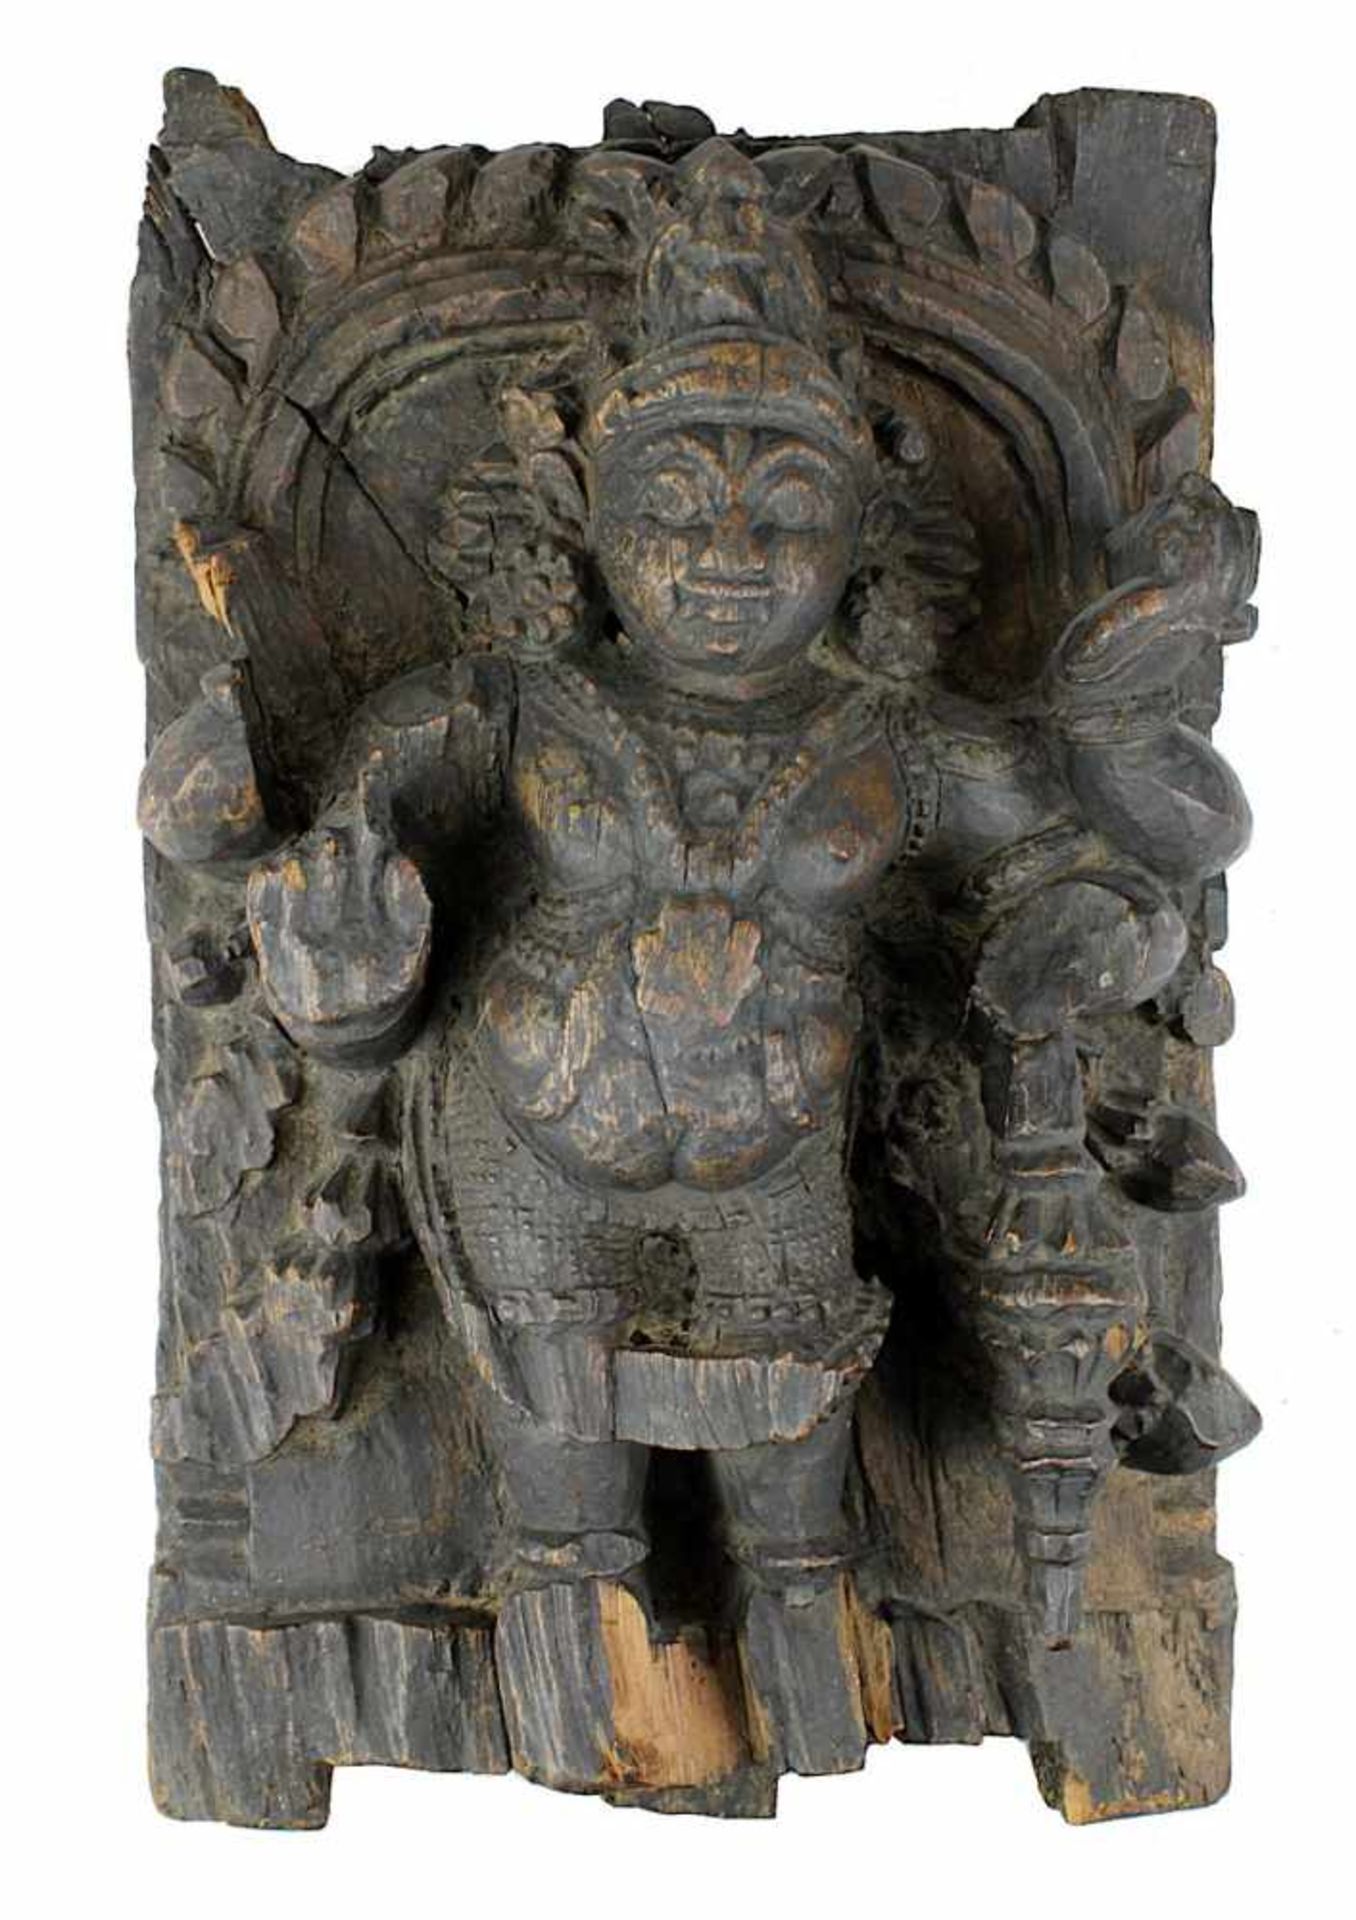 Holzrelief des Gottes Vishnu, Südindien 18./19. Jh., aus einer Holztafel geschnitztes Relief der